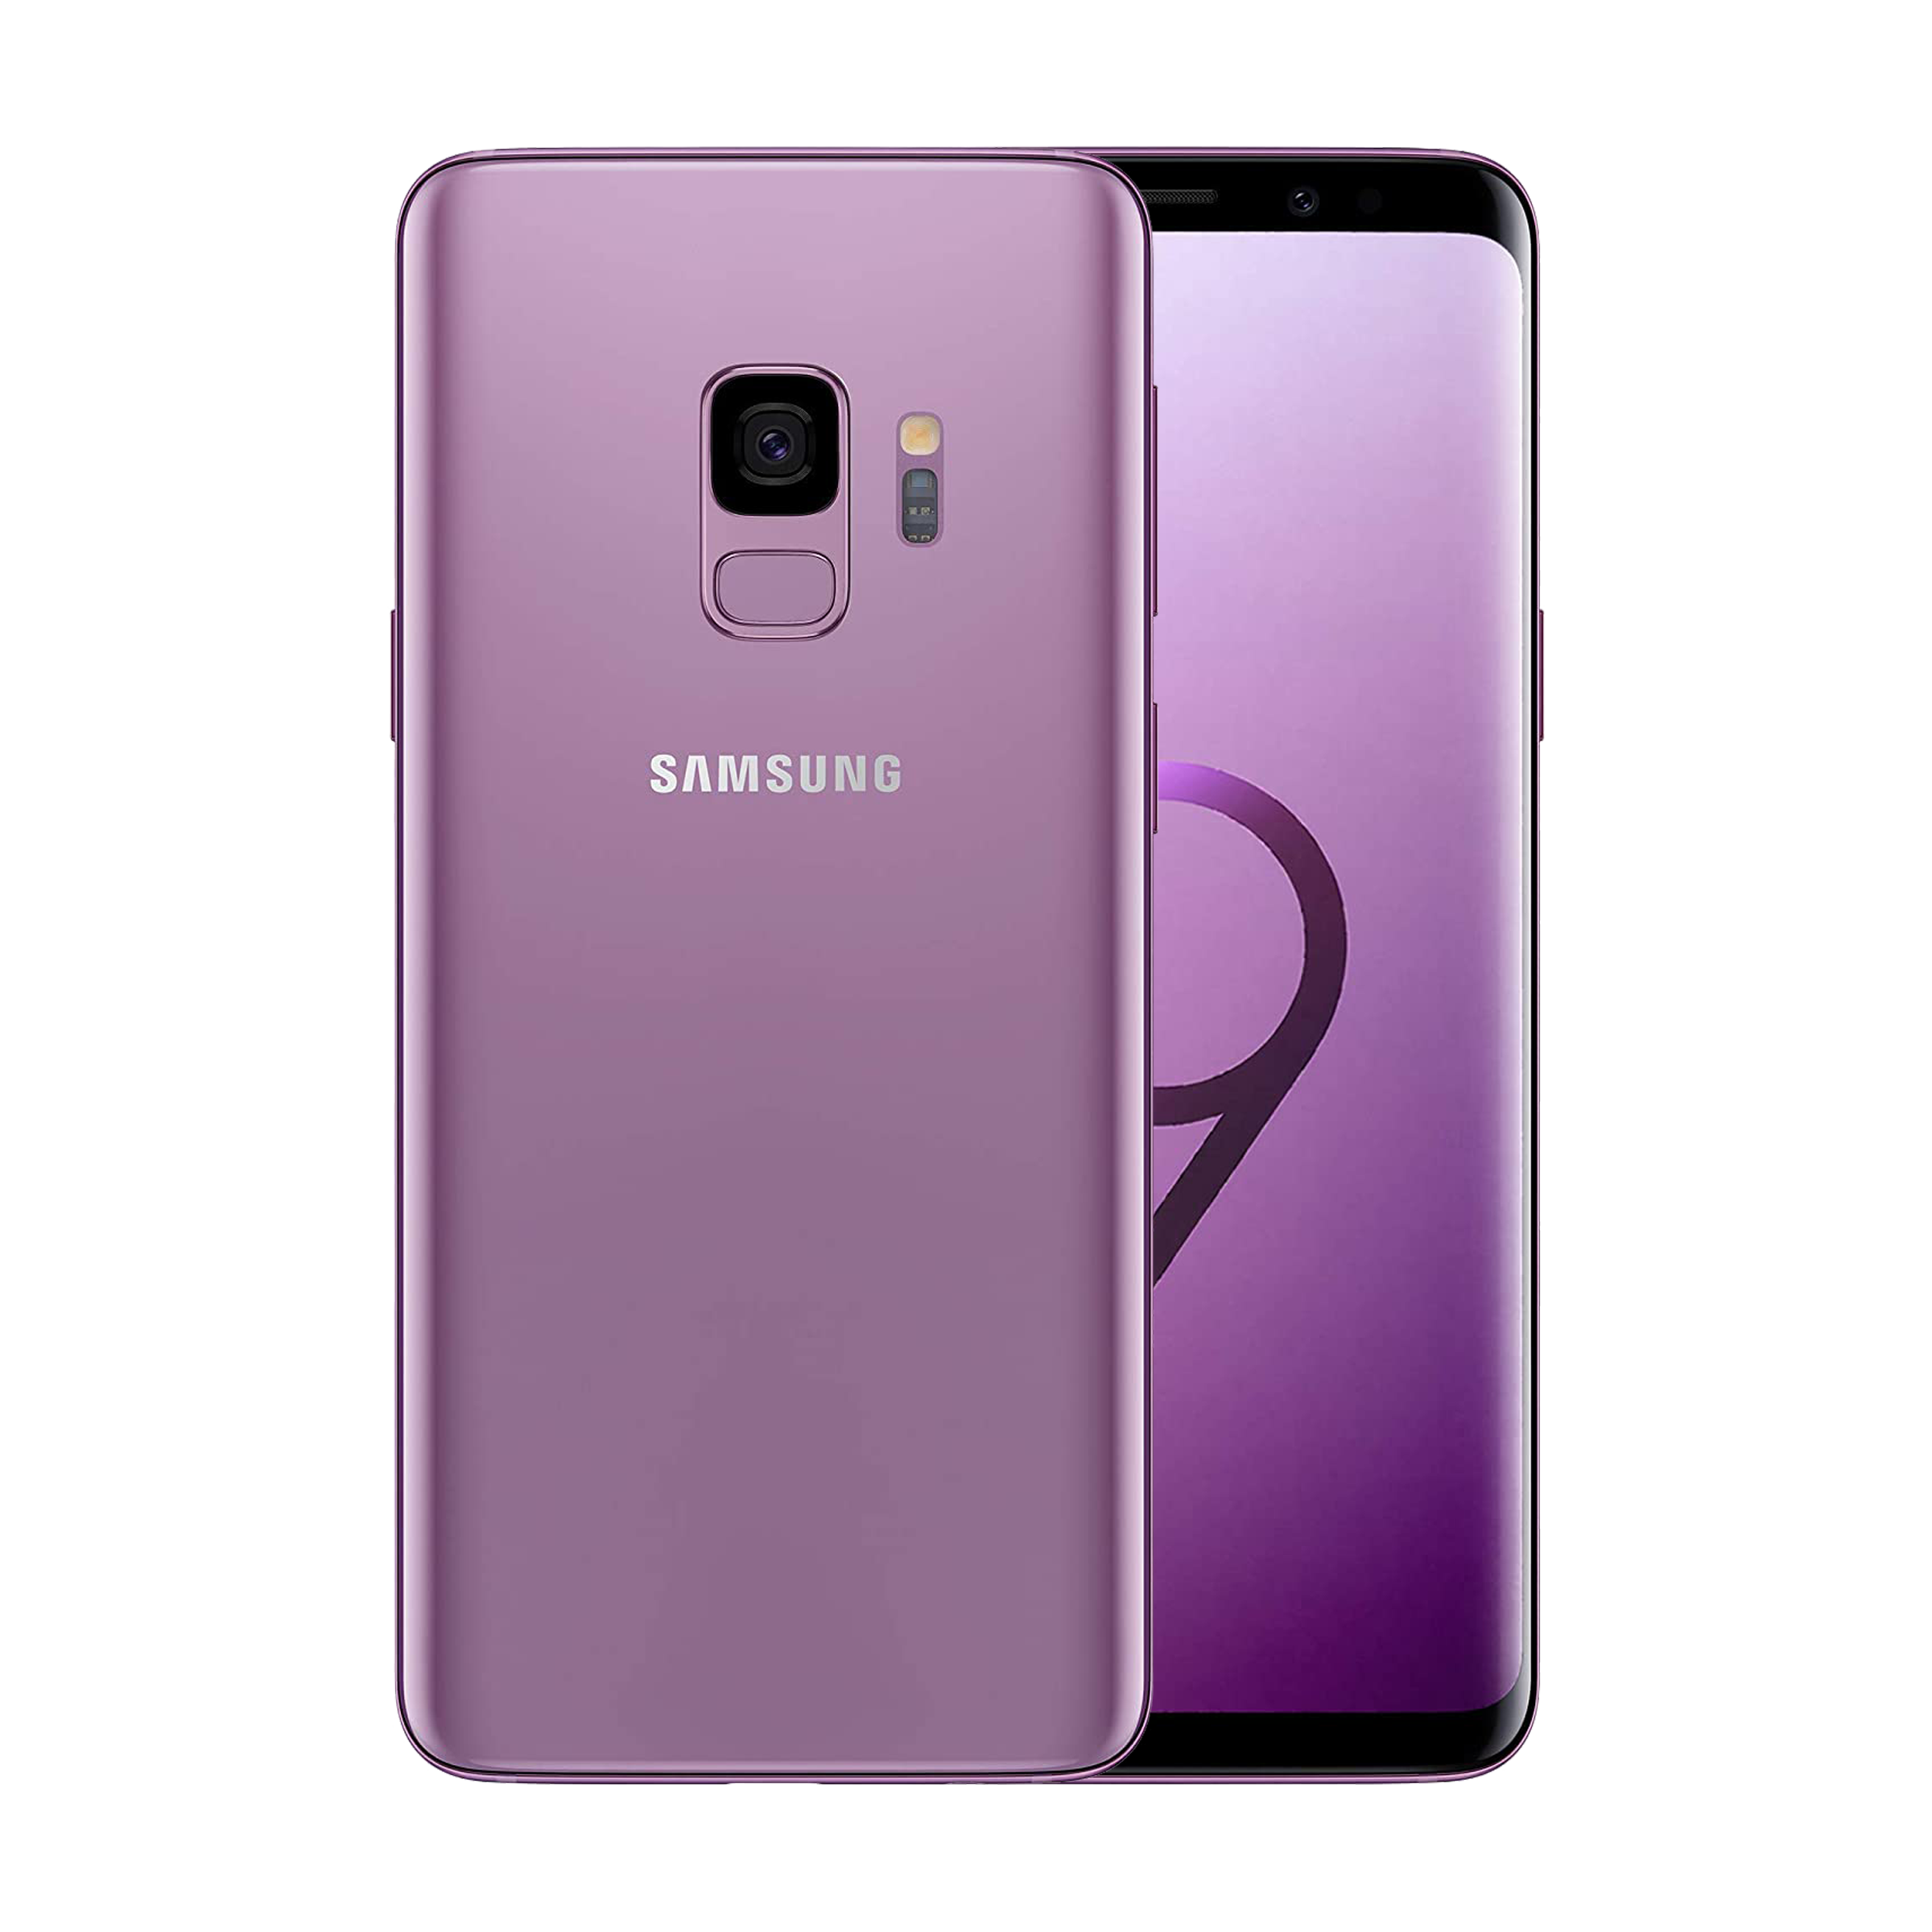 Samsung Galaxy S9 64GB Purple Fair - Unlocked